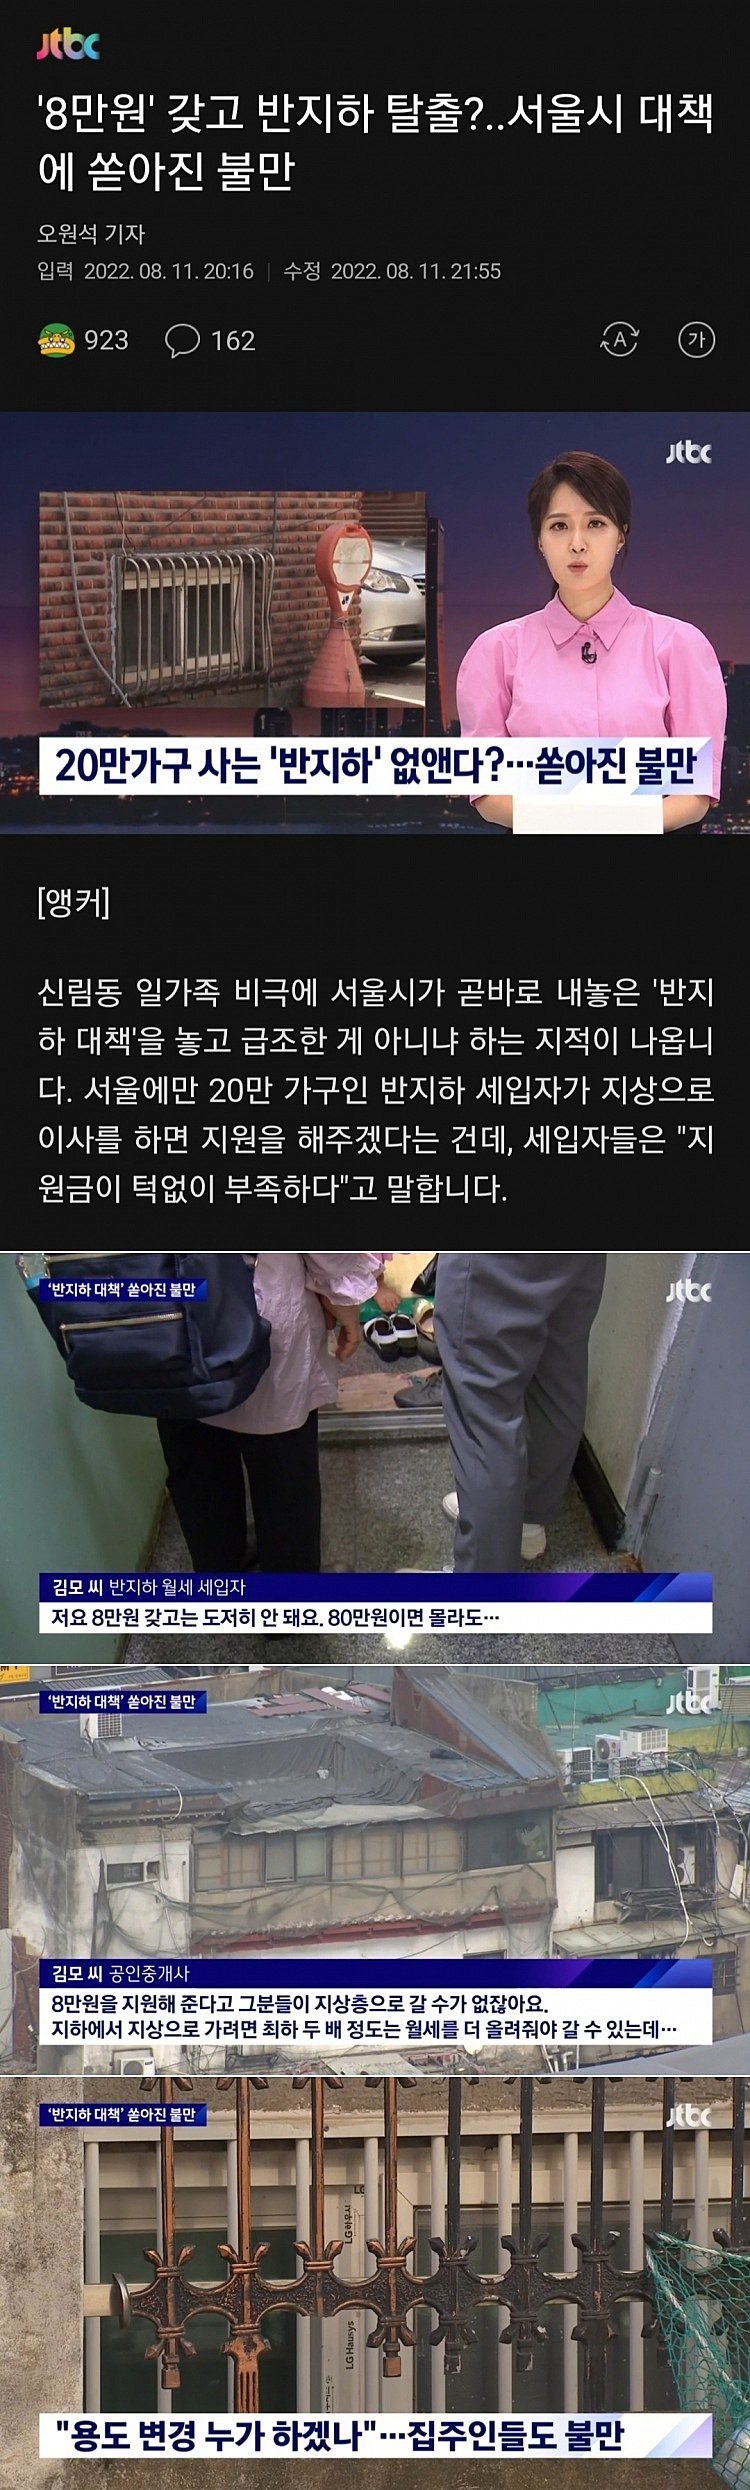 ''8만원'' 갖고 반지하 탈출?..서울시 대책에 쏟아진 불만